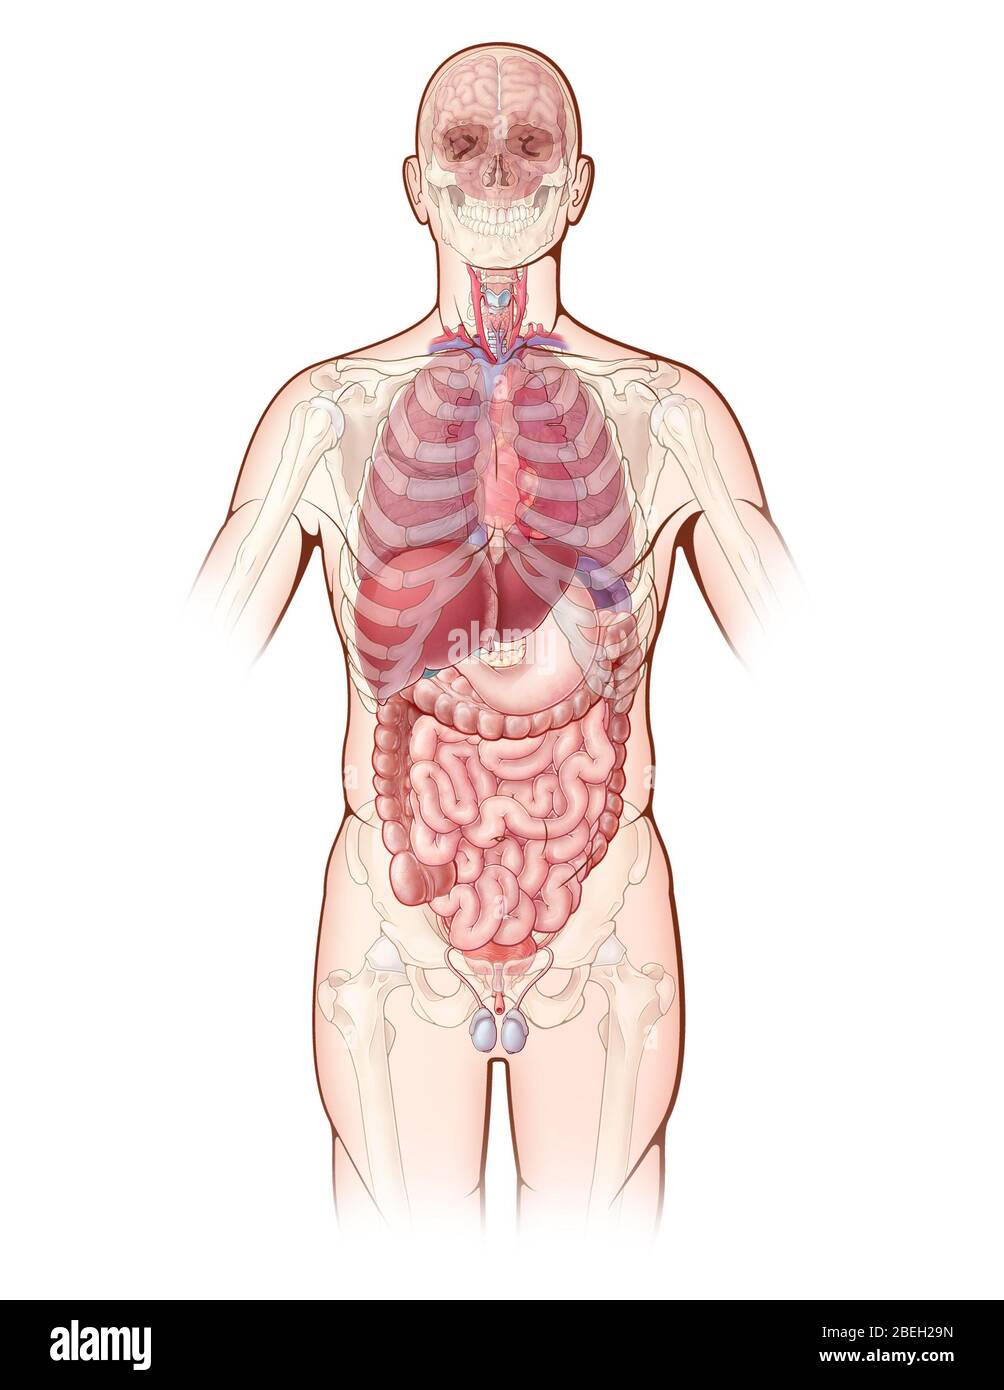 Un'illustrazione raffigurante i principali organi del corpo umano, così come una vista fantasma delle ossa dello scheletro. Foto Stock